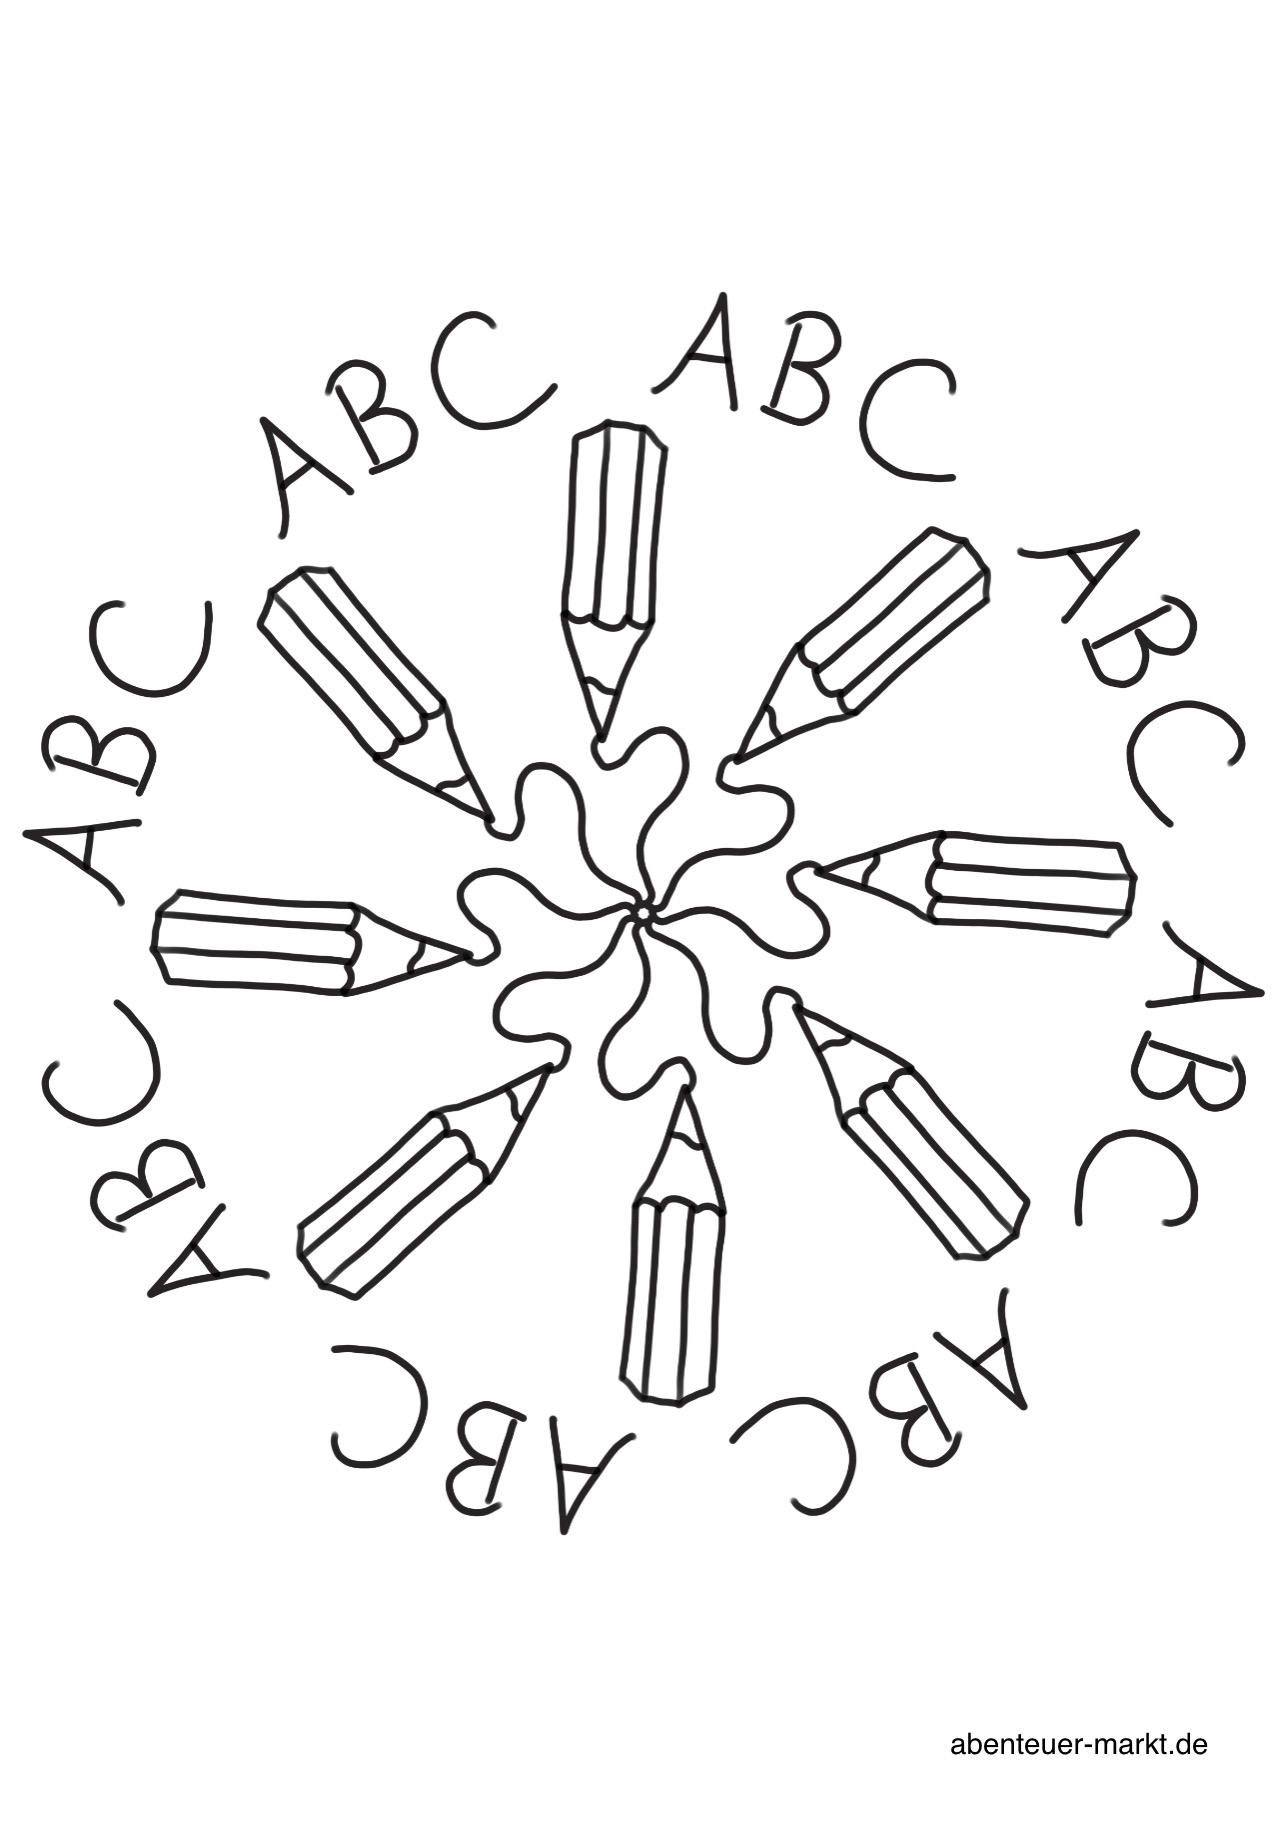 Titelbild zur Bastel- und DIY-Idee für Kinder '(832) Stifte/ Einschulung Ausmalbilder'